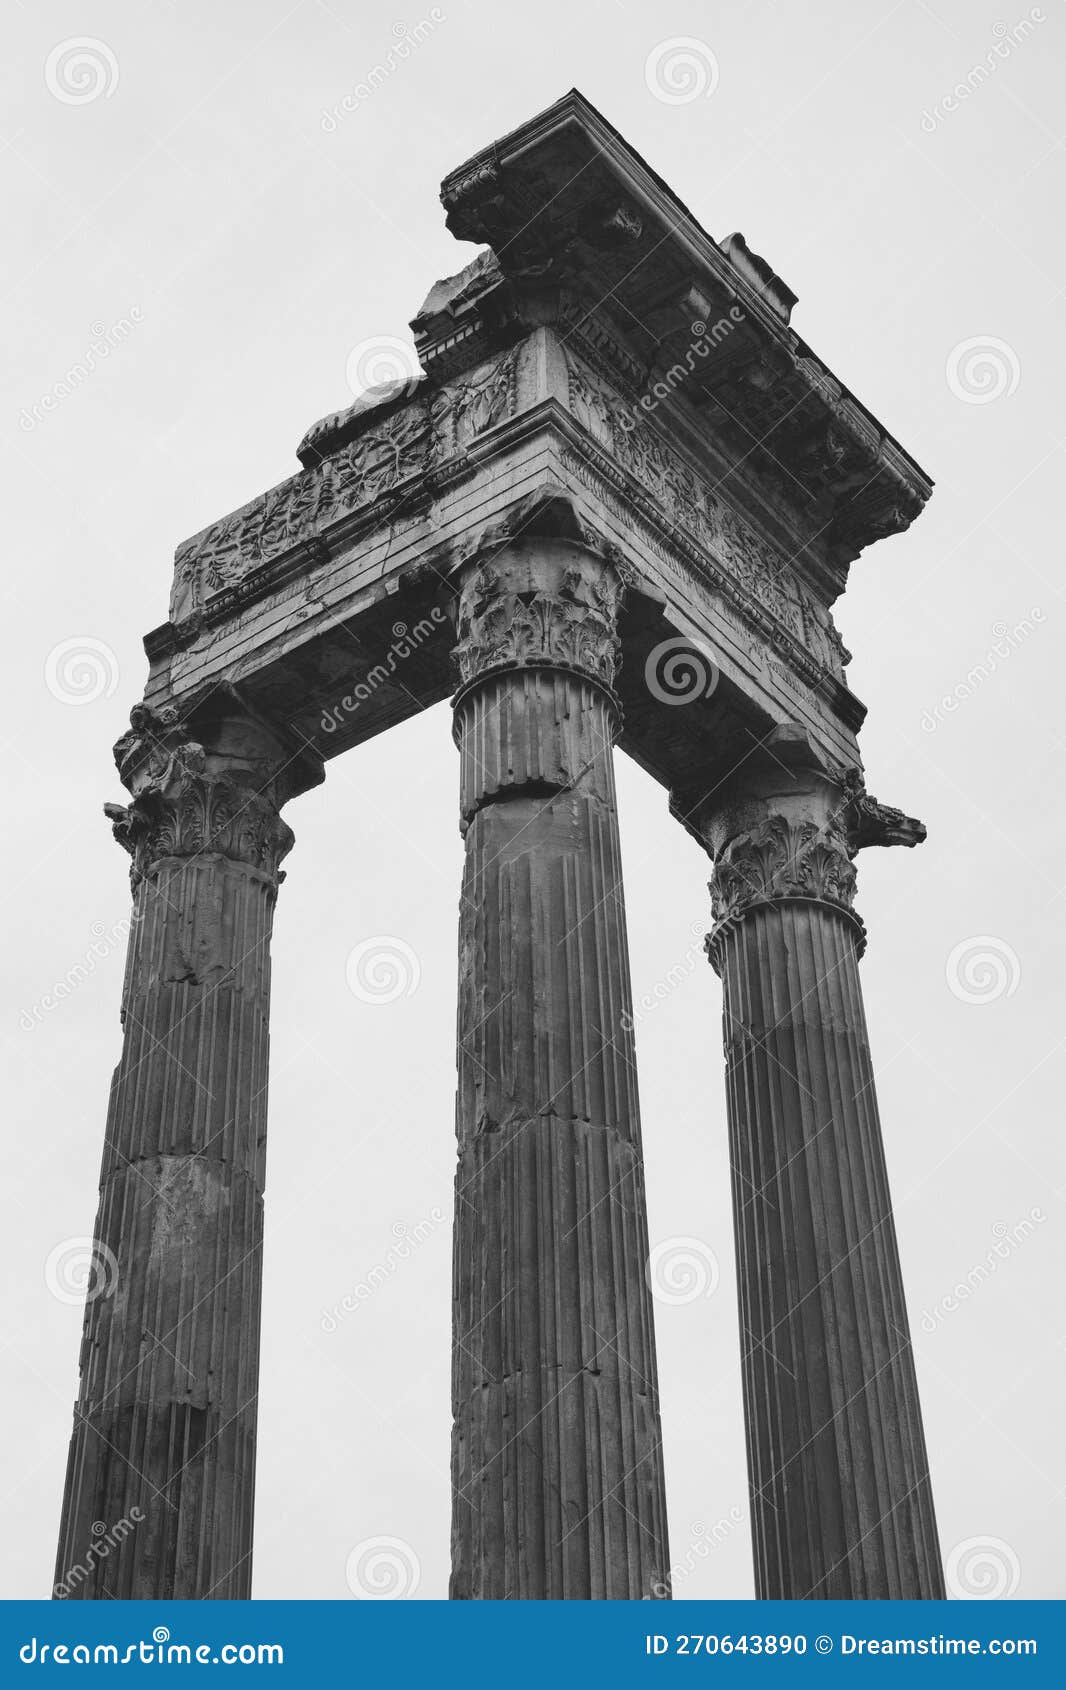 temple of apollo sosianus